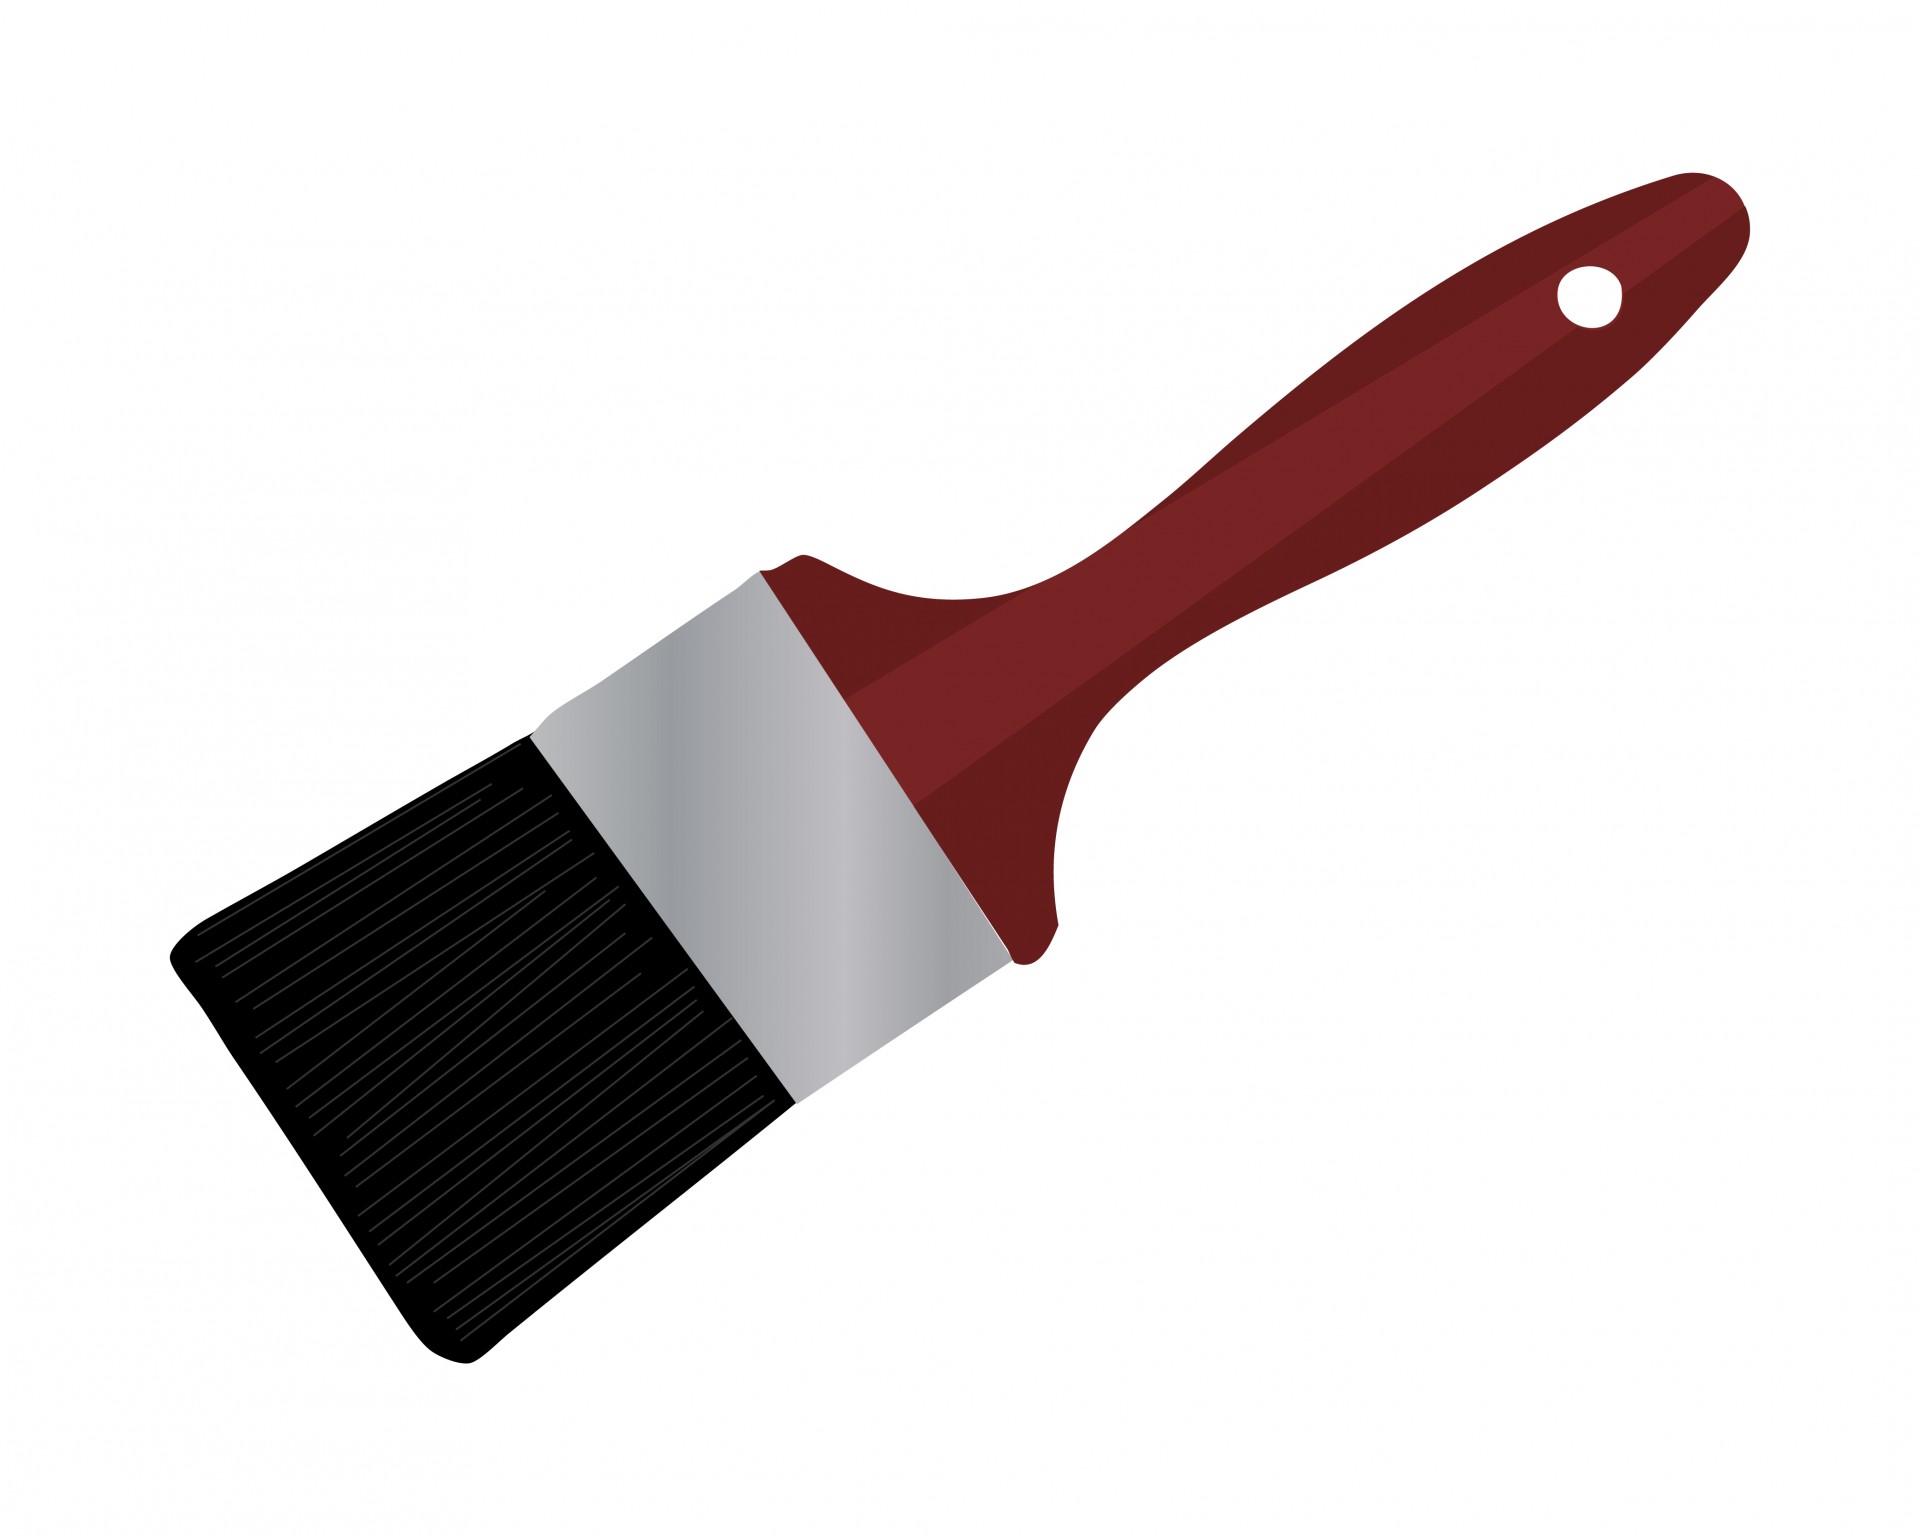 Paintbrush paint brush clipar - Paint Brush Clipart